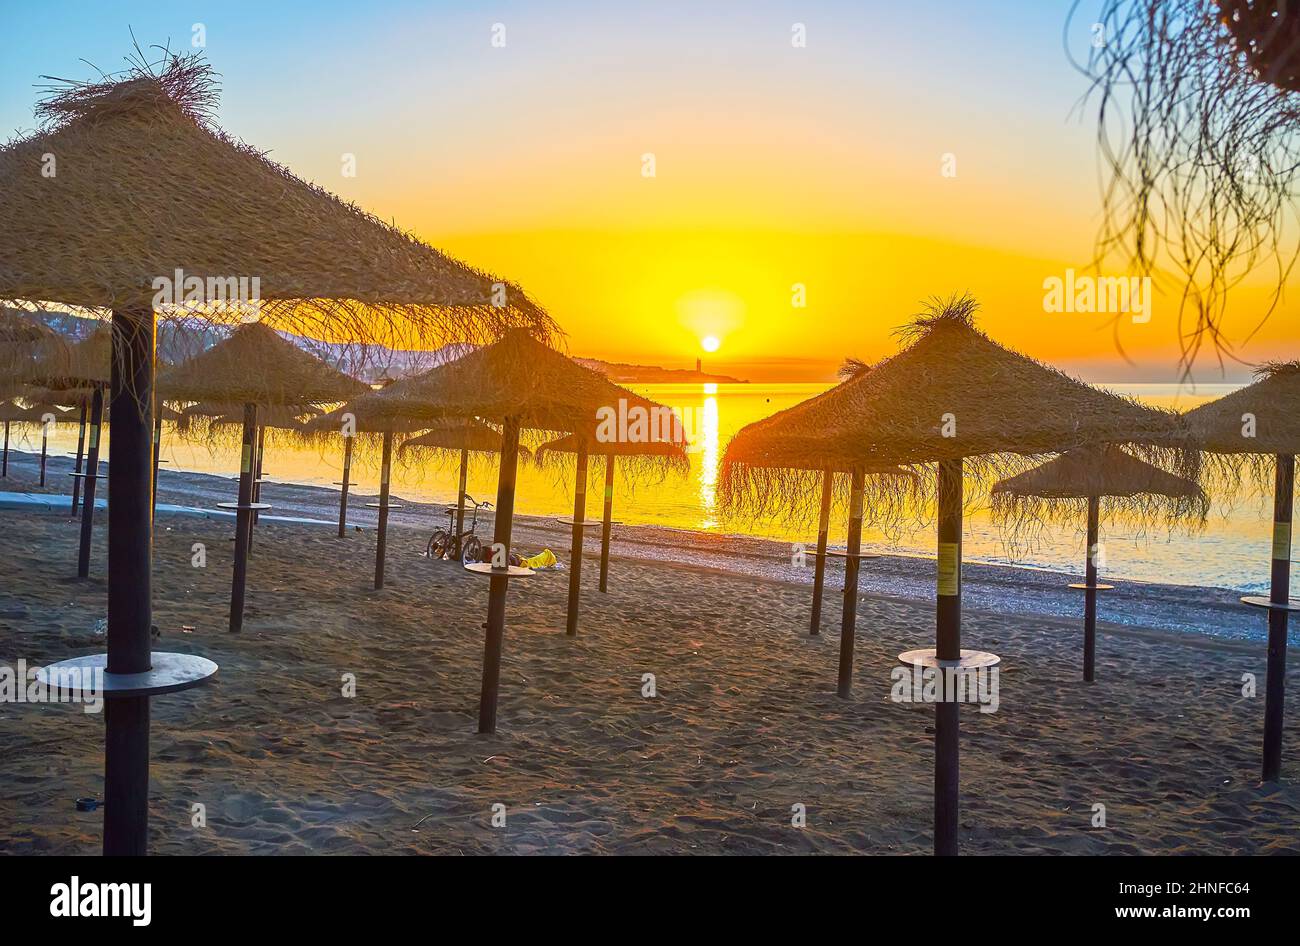 Der Sonnenaufgangsspaziergang am Strand von Malagueta mit Blick auf die zahlreichen Strohsonnenschirme, die Küste, den Sonnenaufgang und den Sonnenweg am Mittelmeer, Malaga, Stockfoto